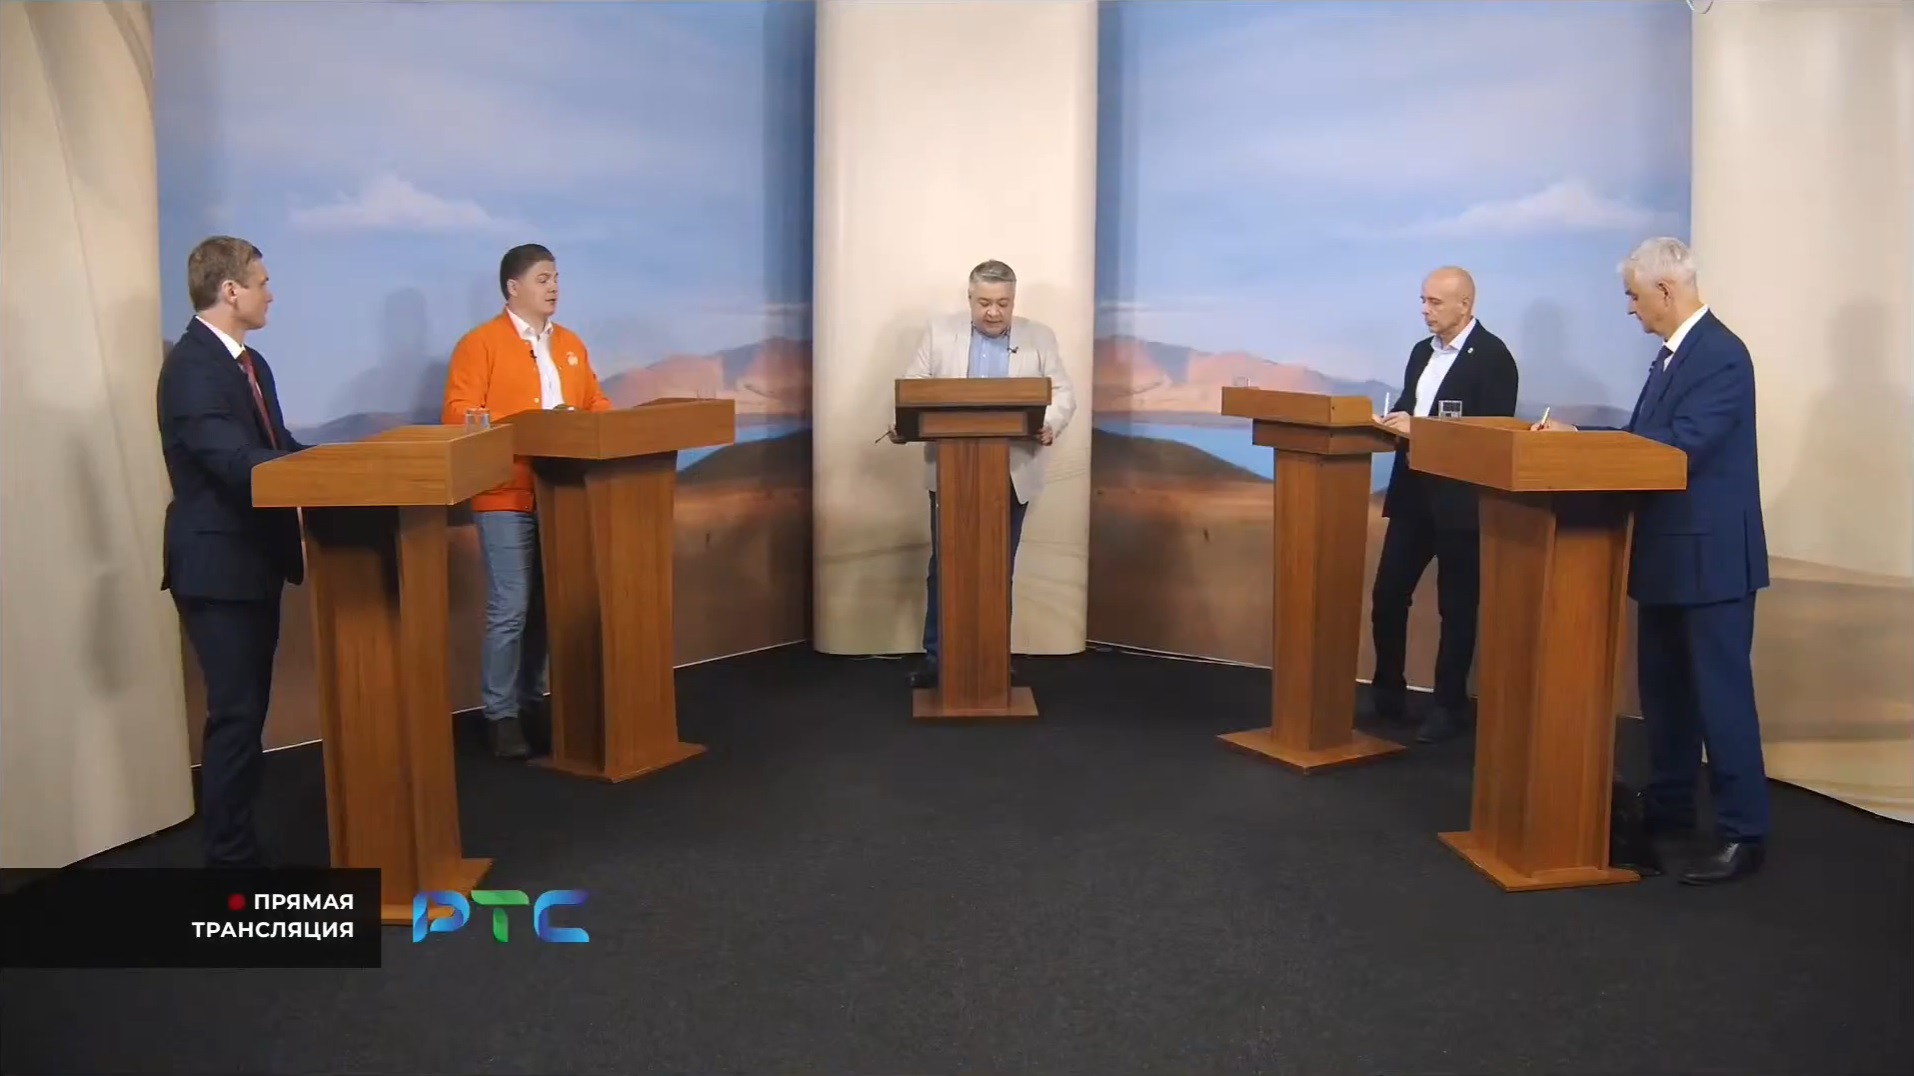 Дебаты кандидатов на канале РТС